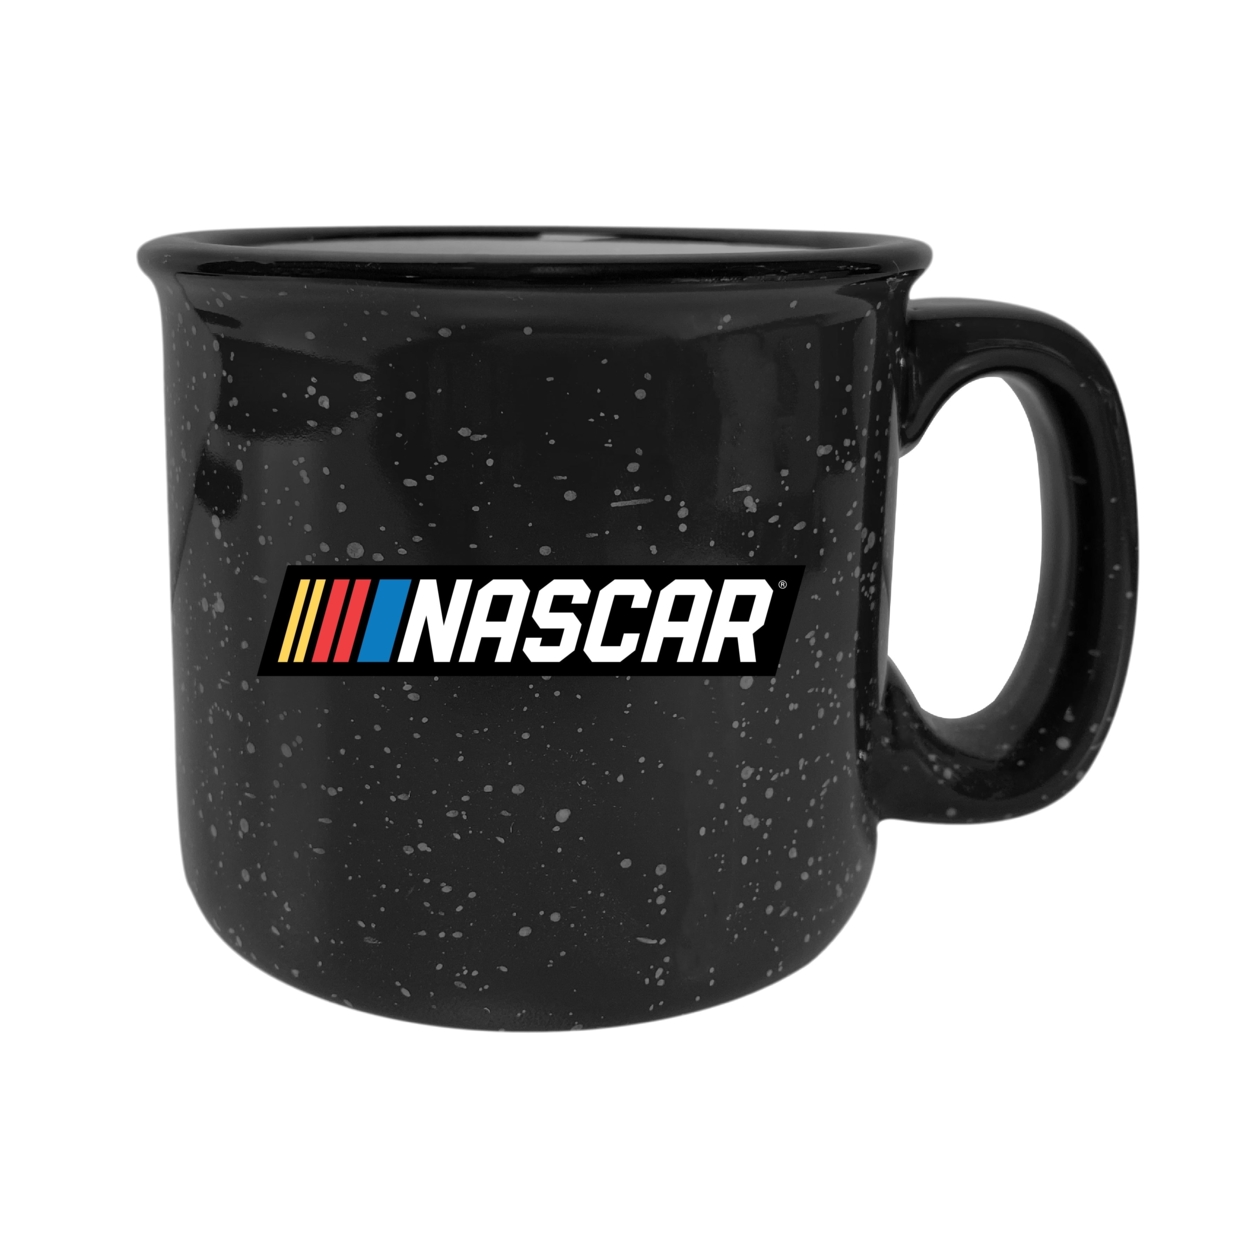 NASCAR Officially Licensed Ceramic Camper Mug 16oz - Black